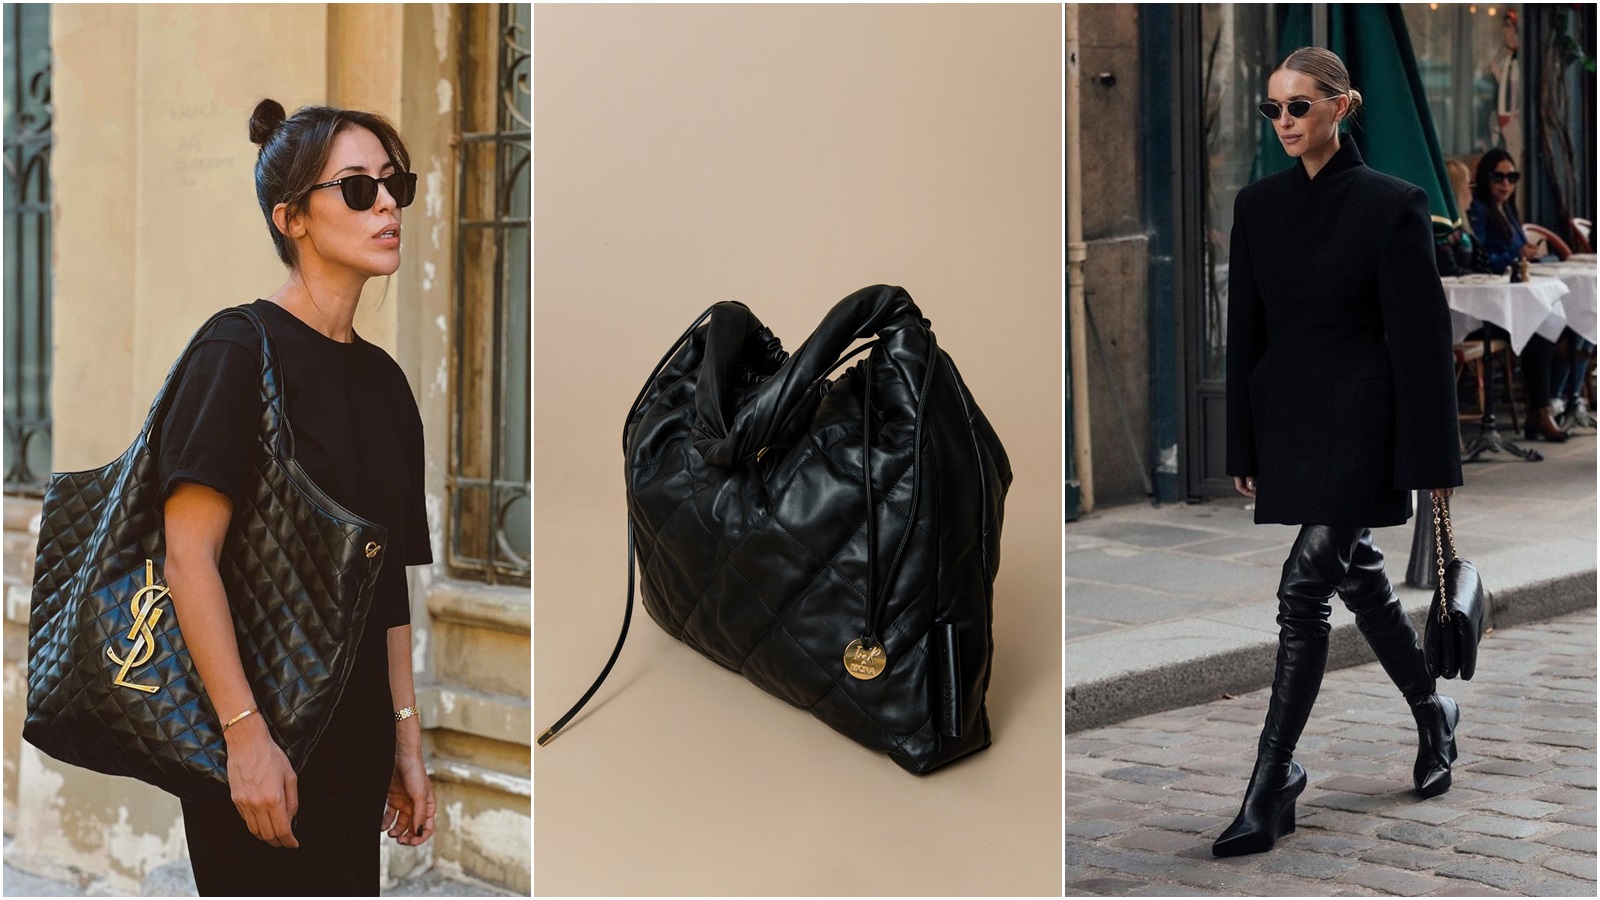 Crna torba je klasik zimske garderobe, a izdvajamo njenih 30 najboljih modela